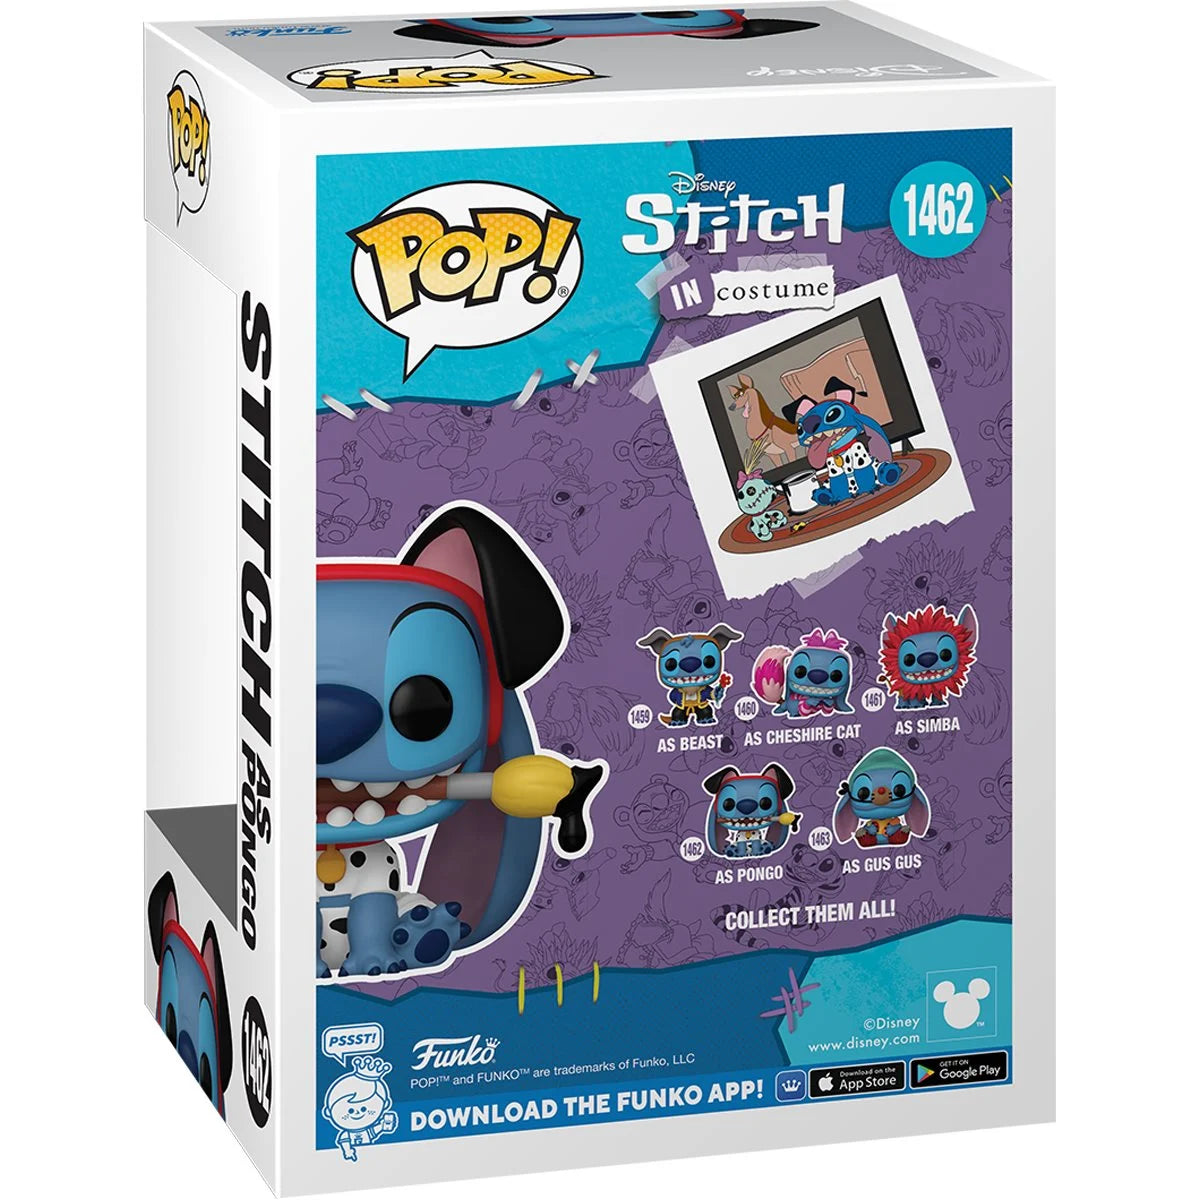 Funko Pop! Lilo & Stitch - Costume Stitch as Pongo